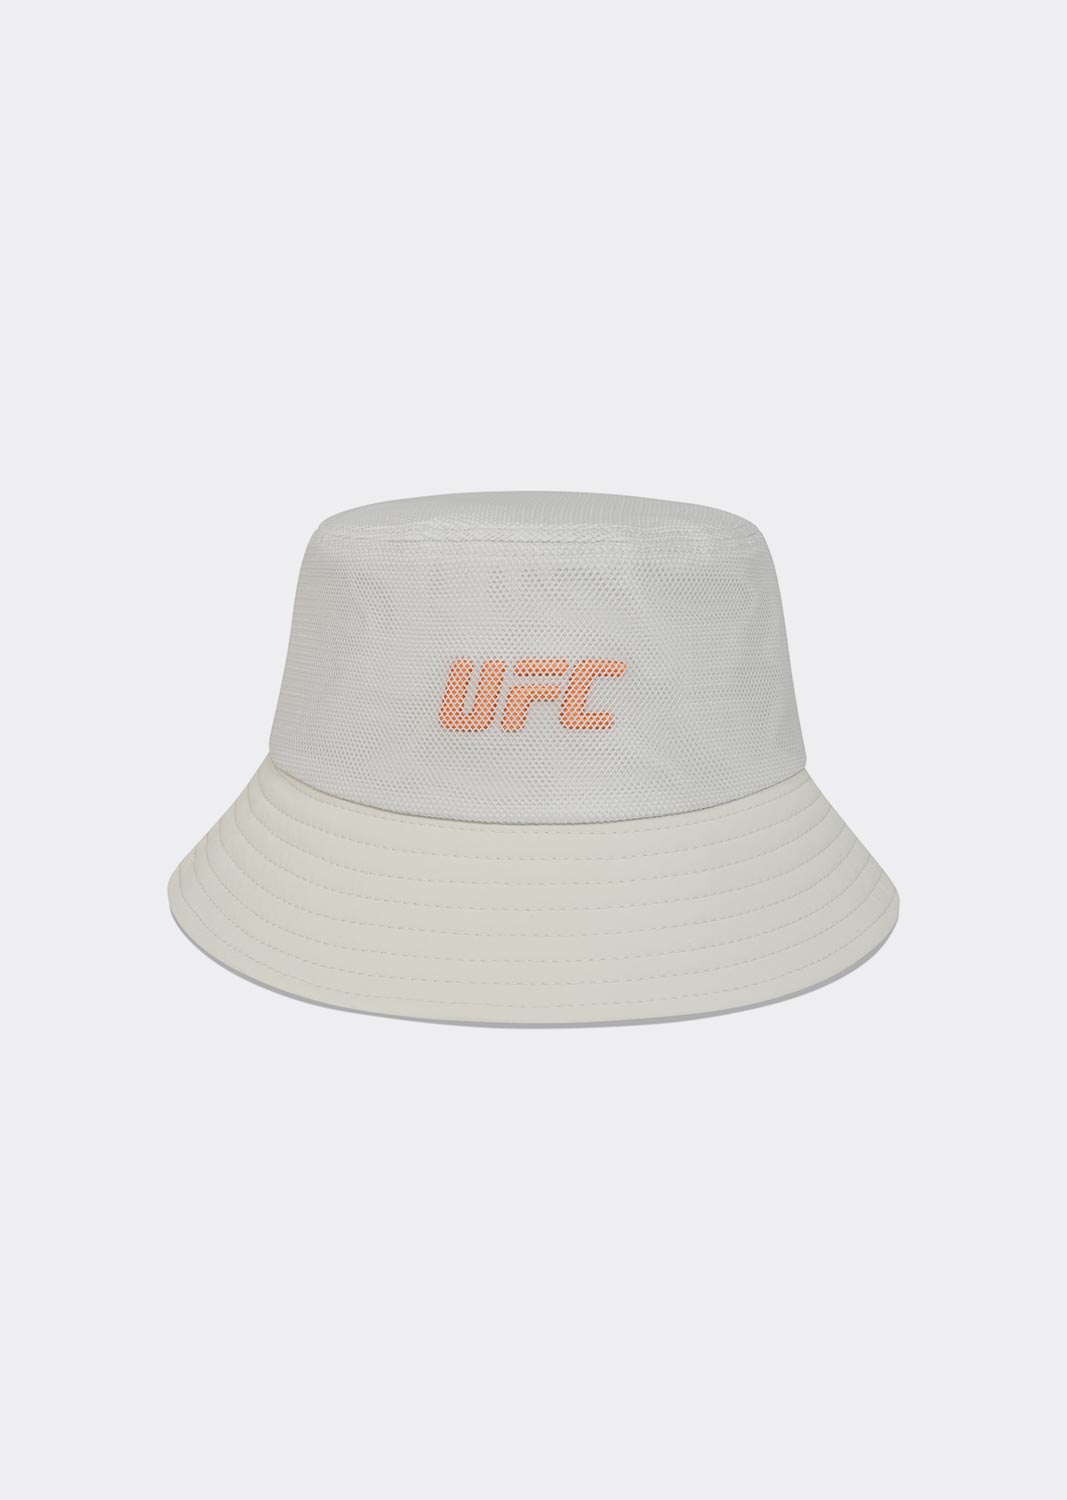 UFC 쉐도우 메쉬 버킷햇 라이트그레이 U1HWU1340LG